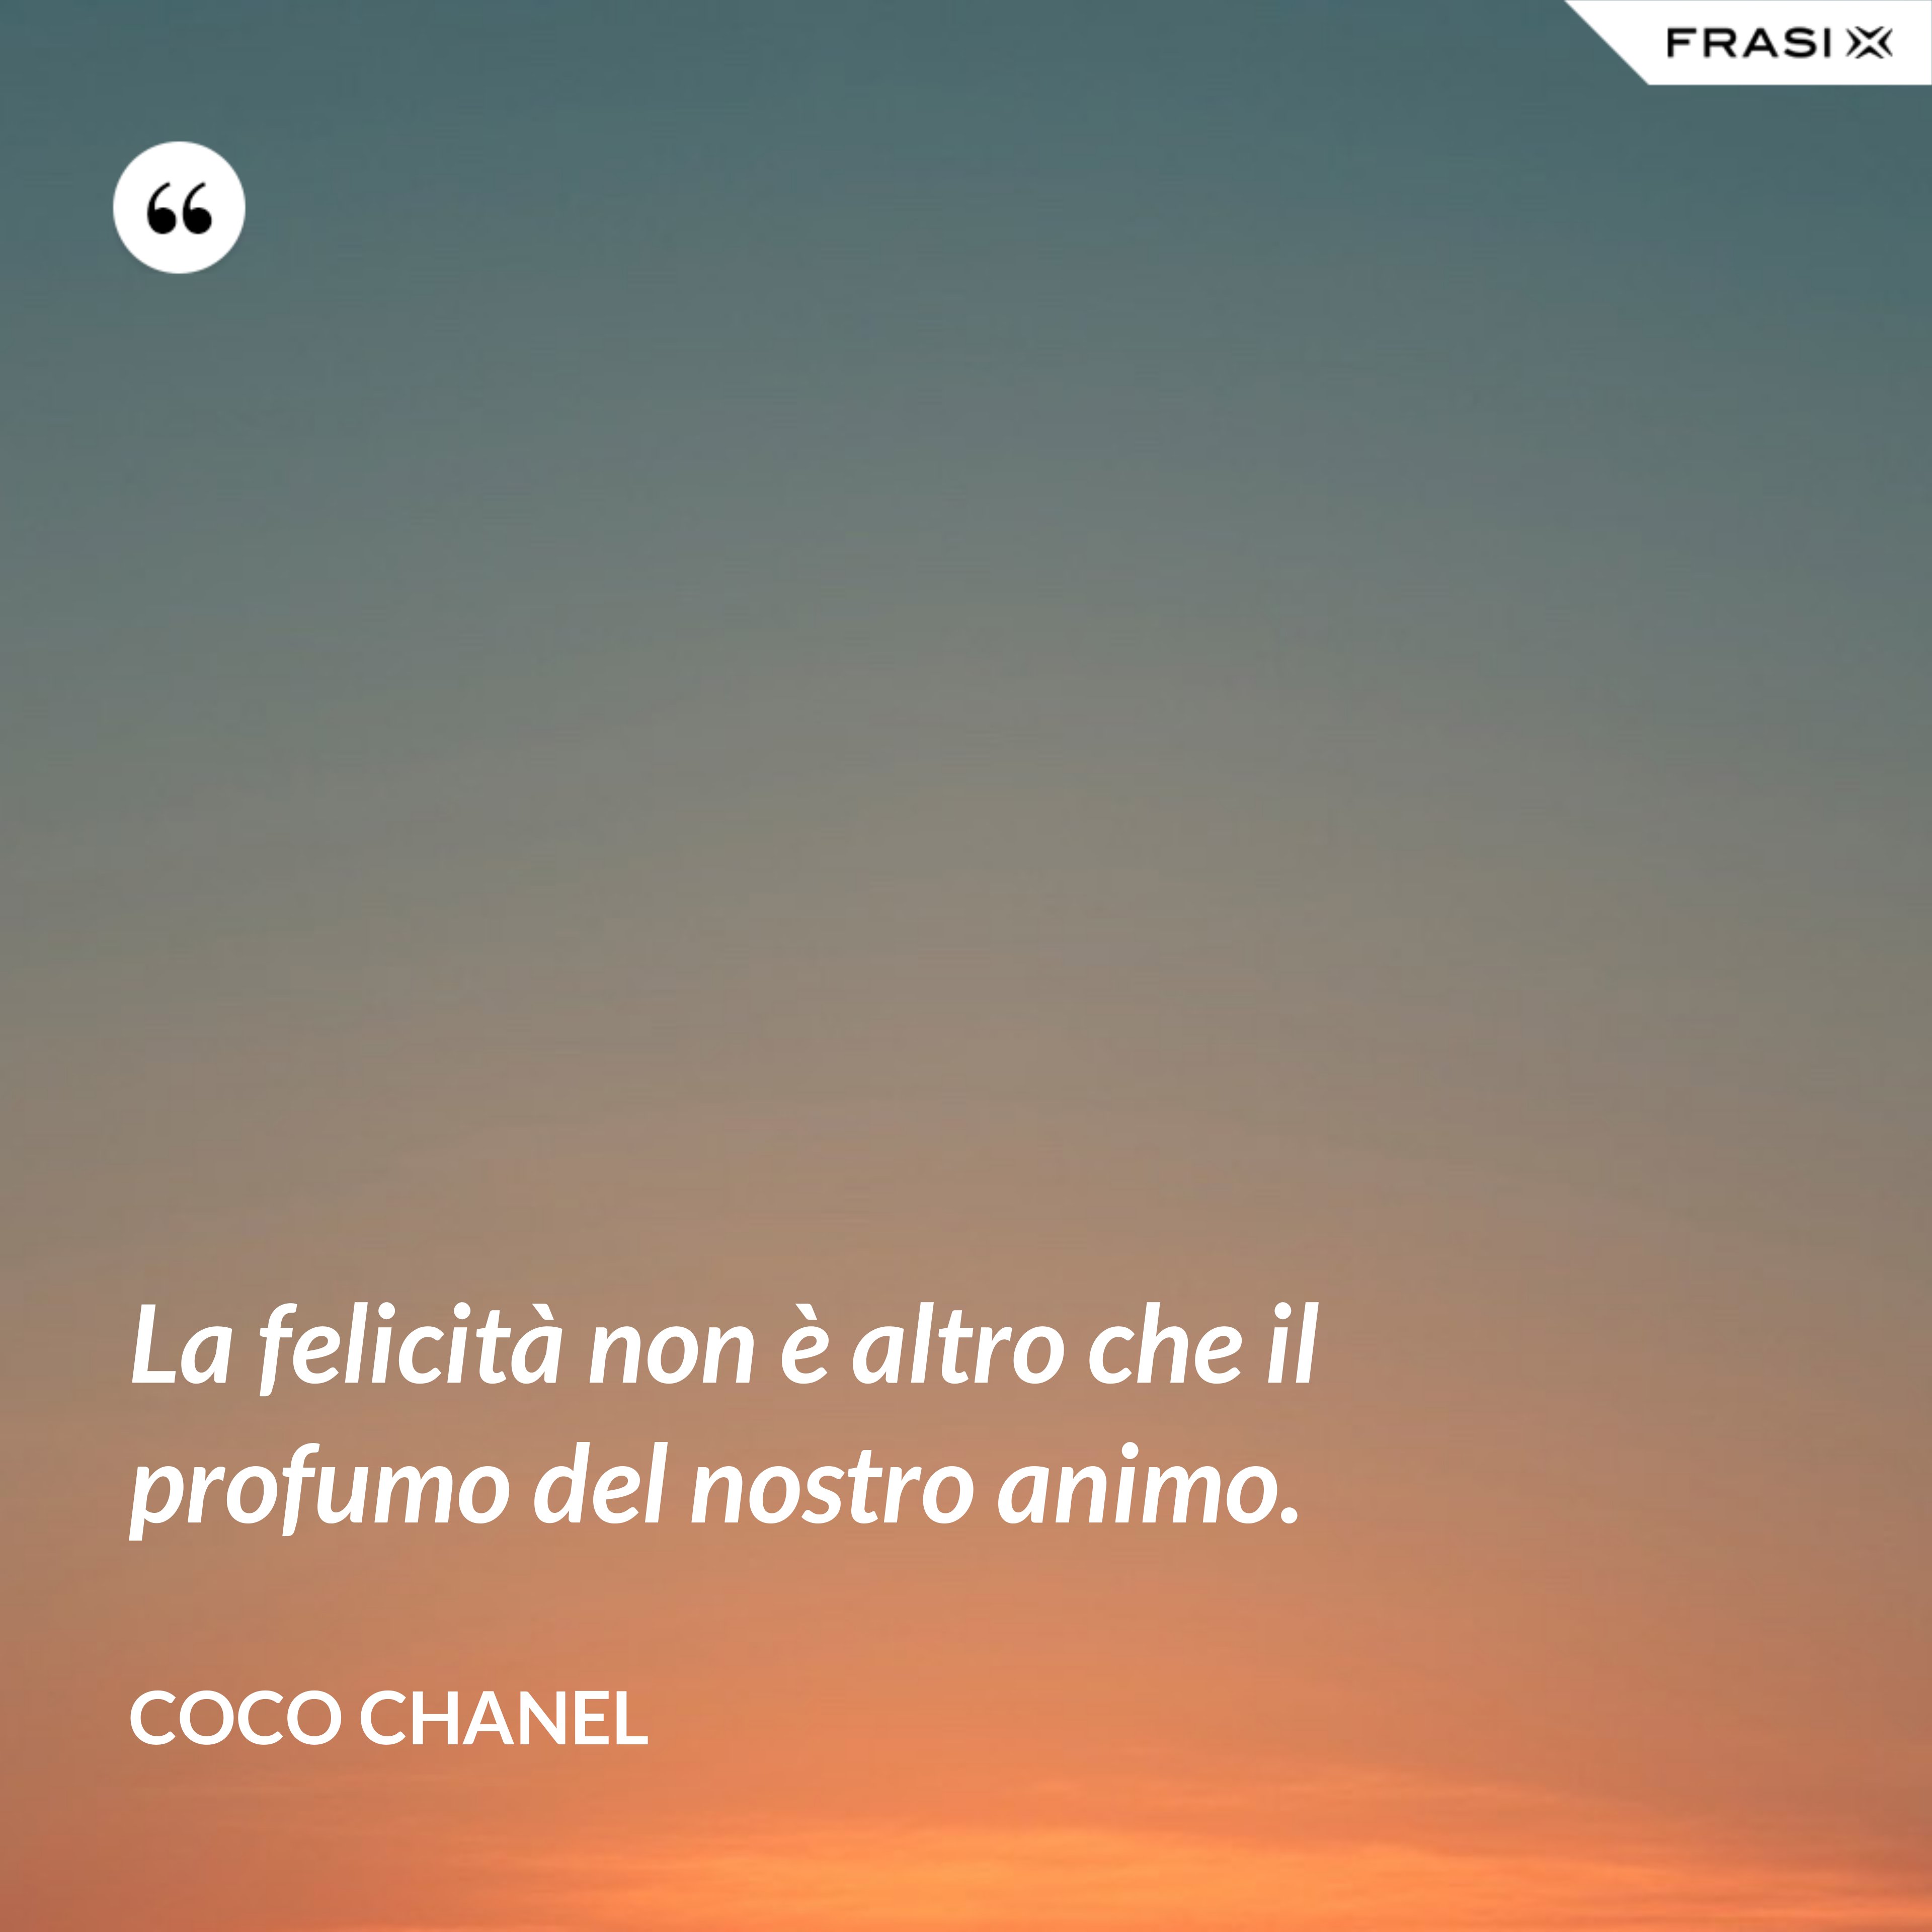 La felicità non è altro che il profumo del nostro animo. - Coco Chanel